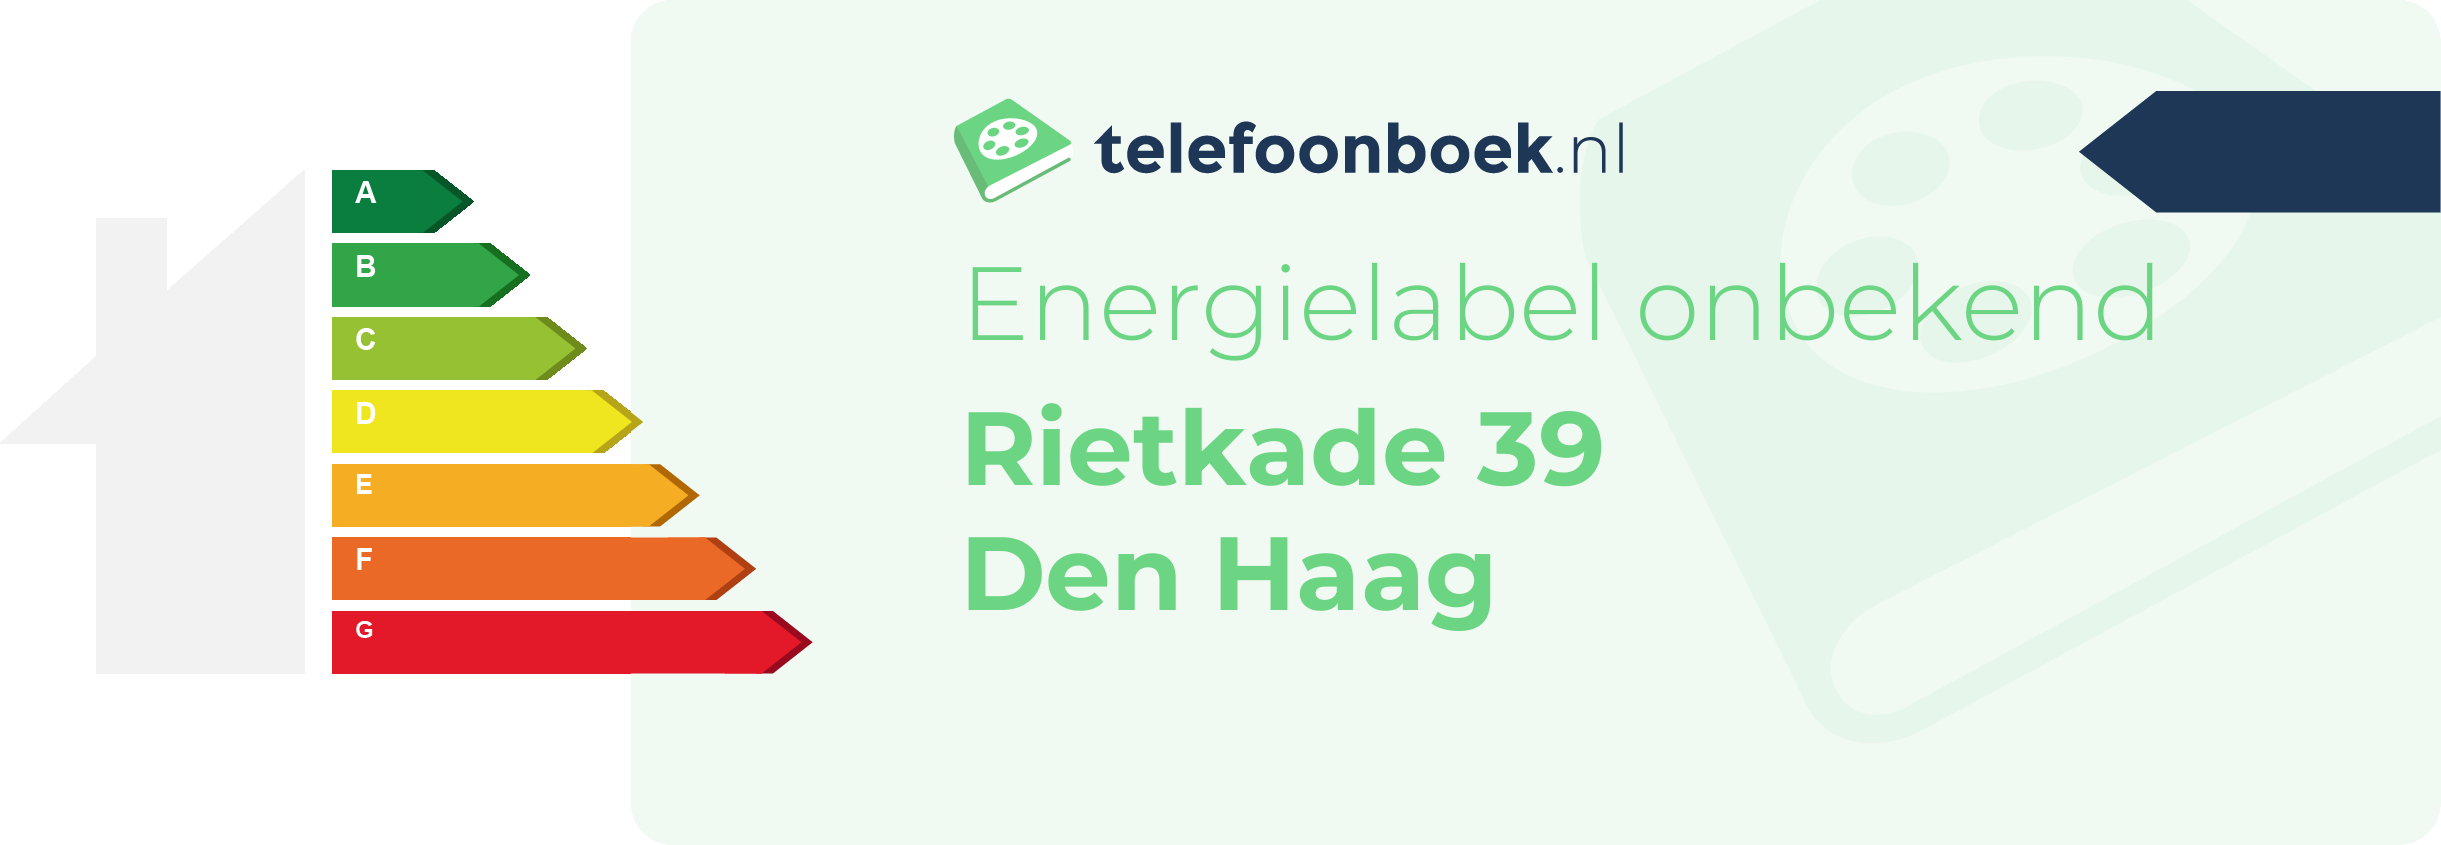 Energielabel Rietkade 39 Den Haag